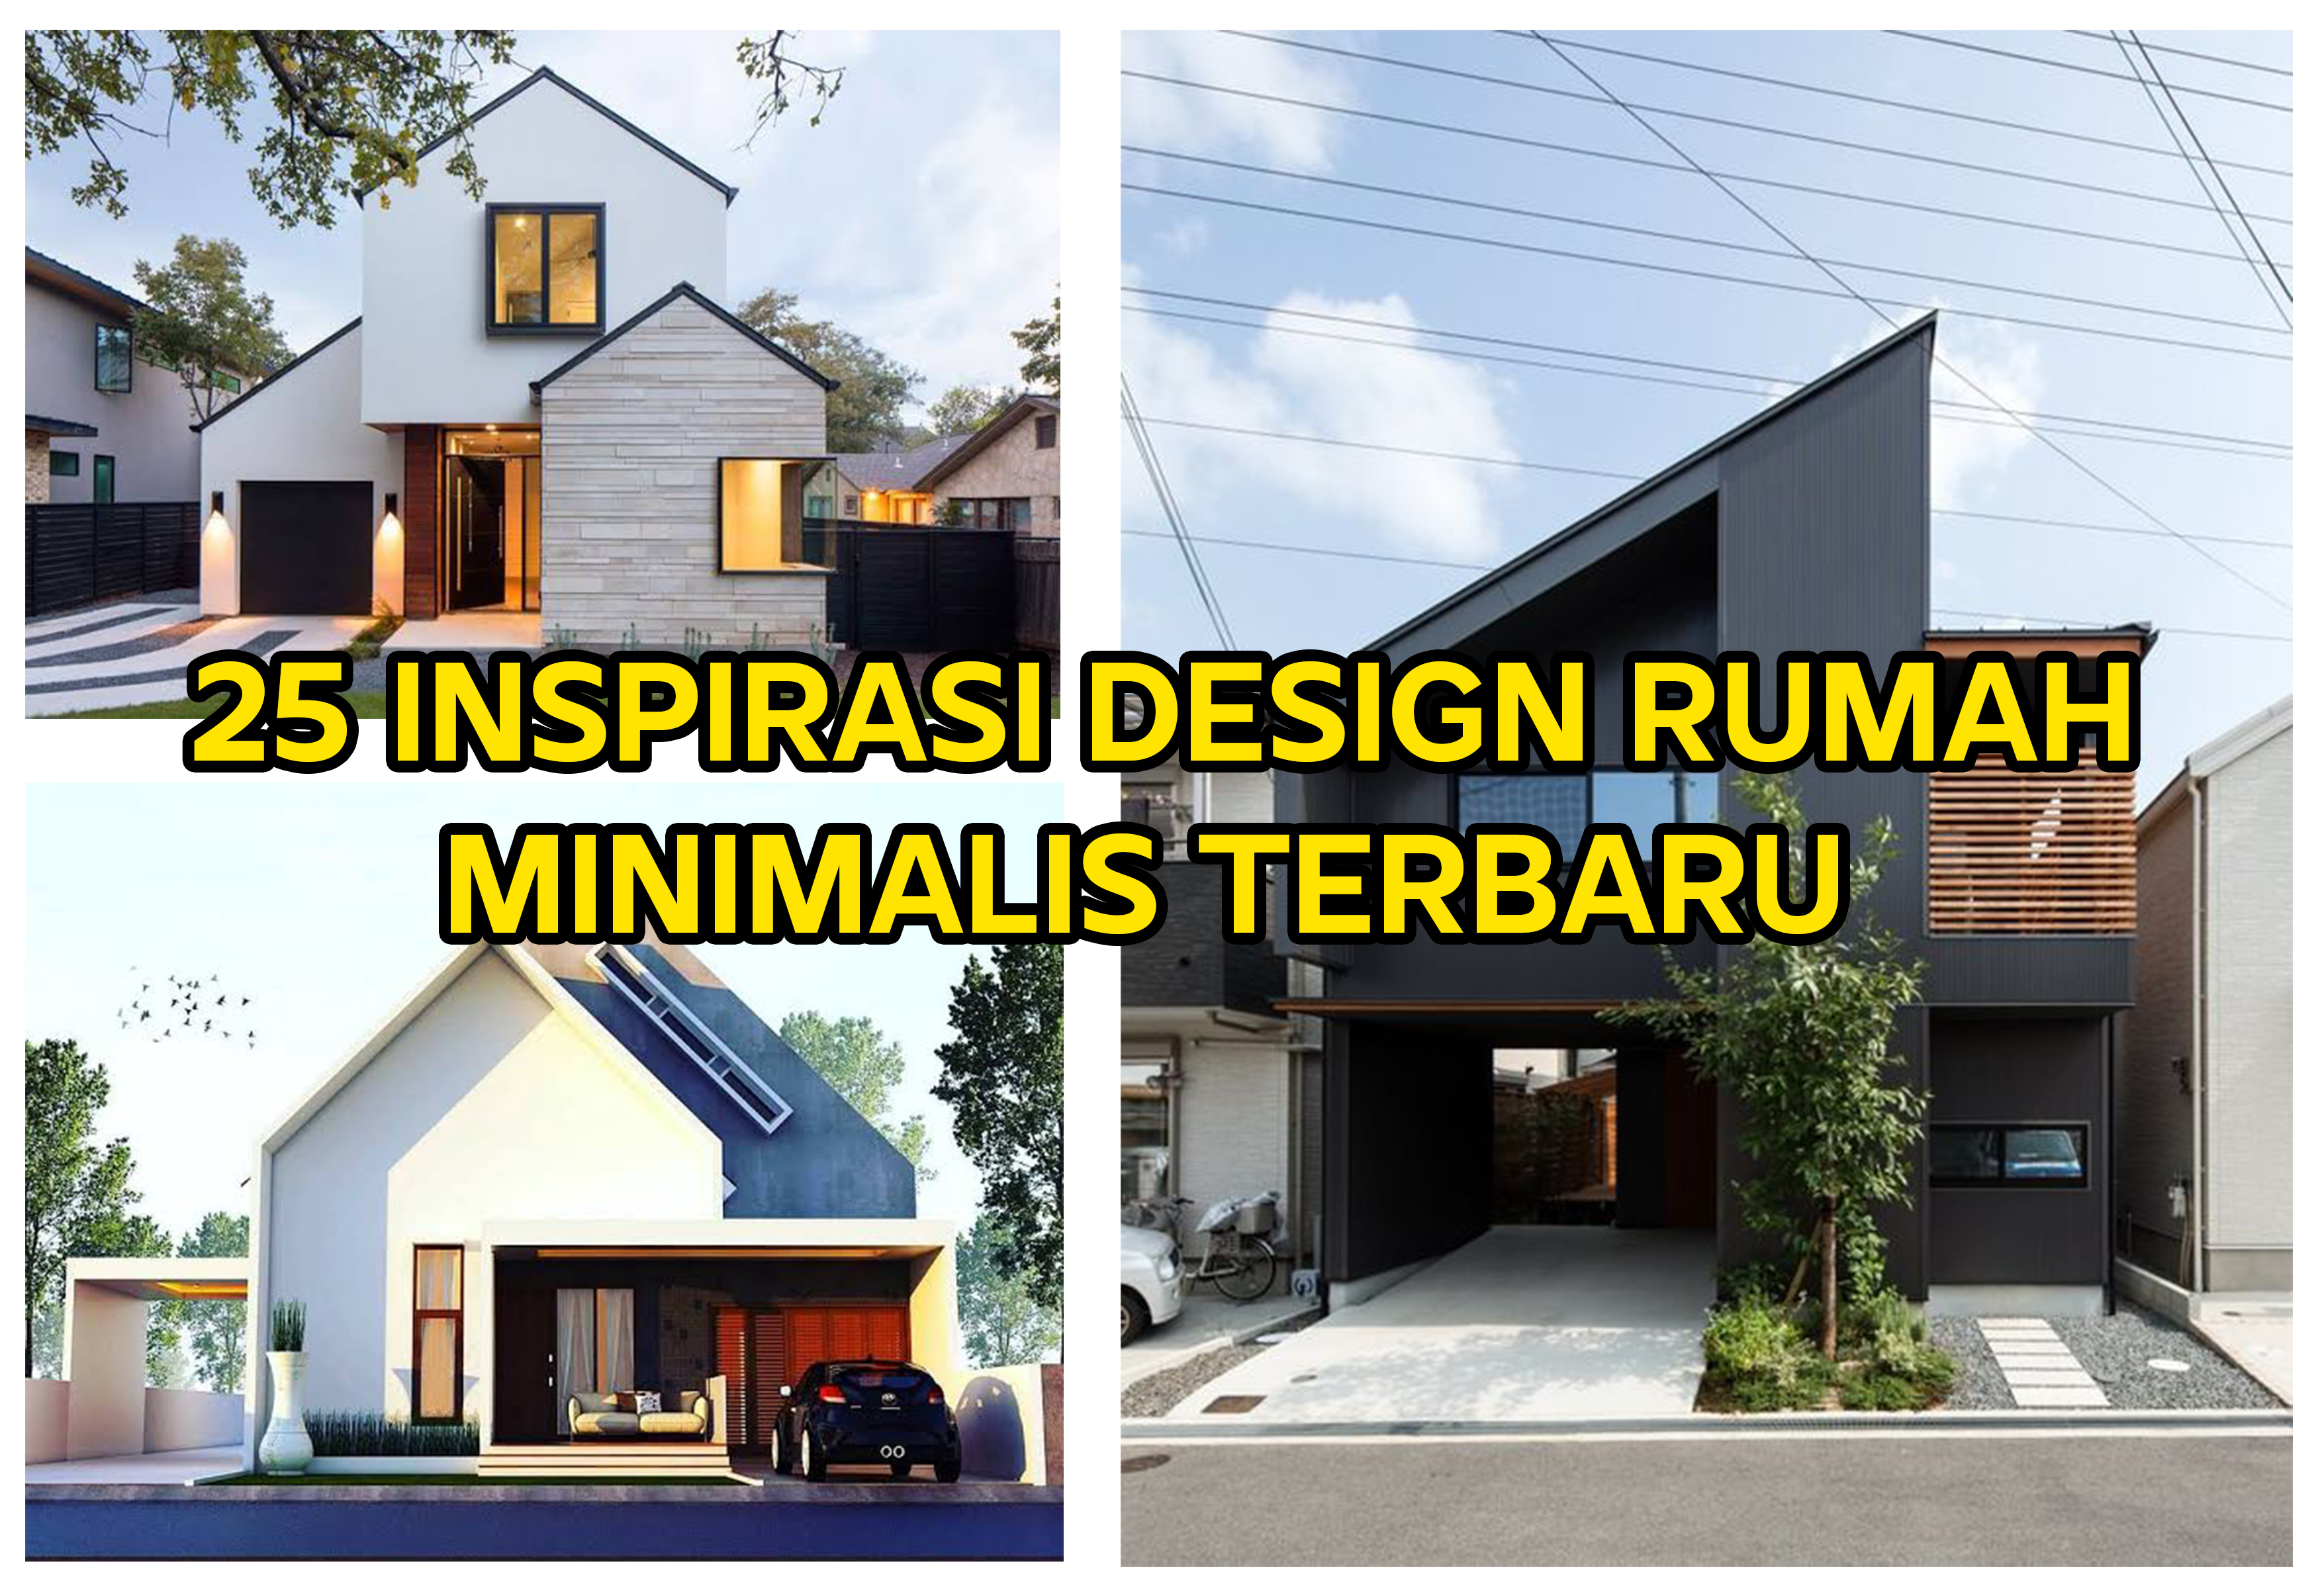 25 Inspirasi Desain Rumah Minimalis Terbaru Bintorobuild